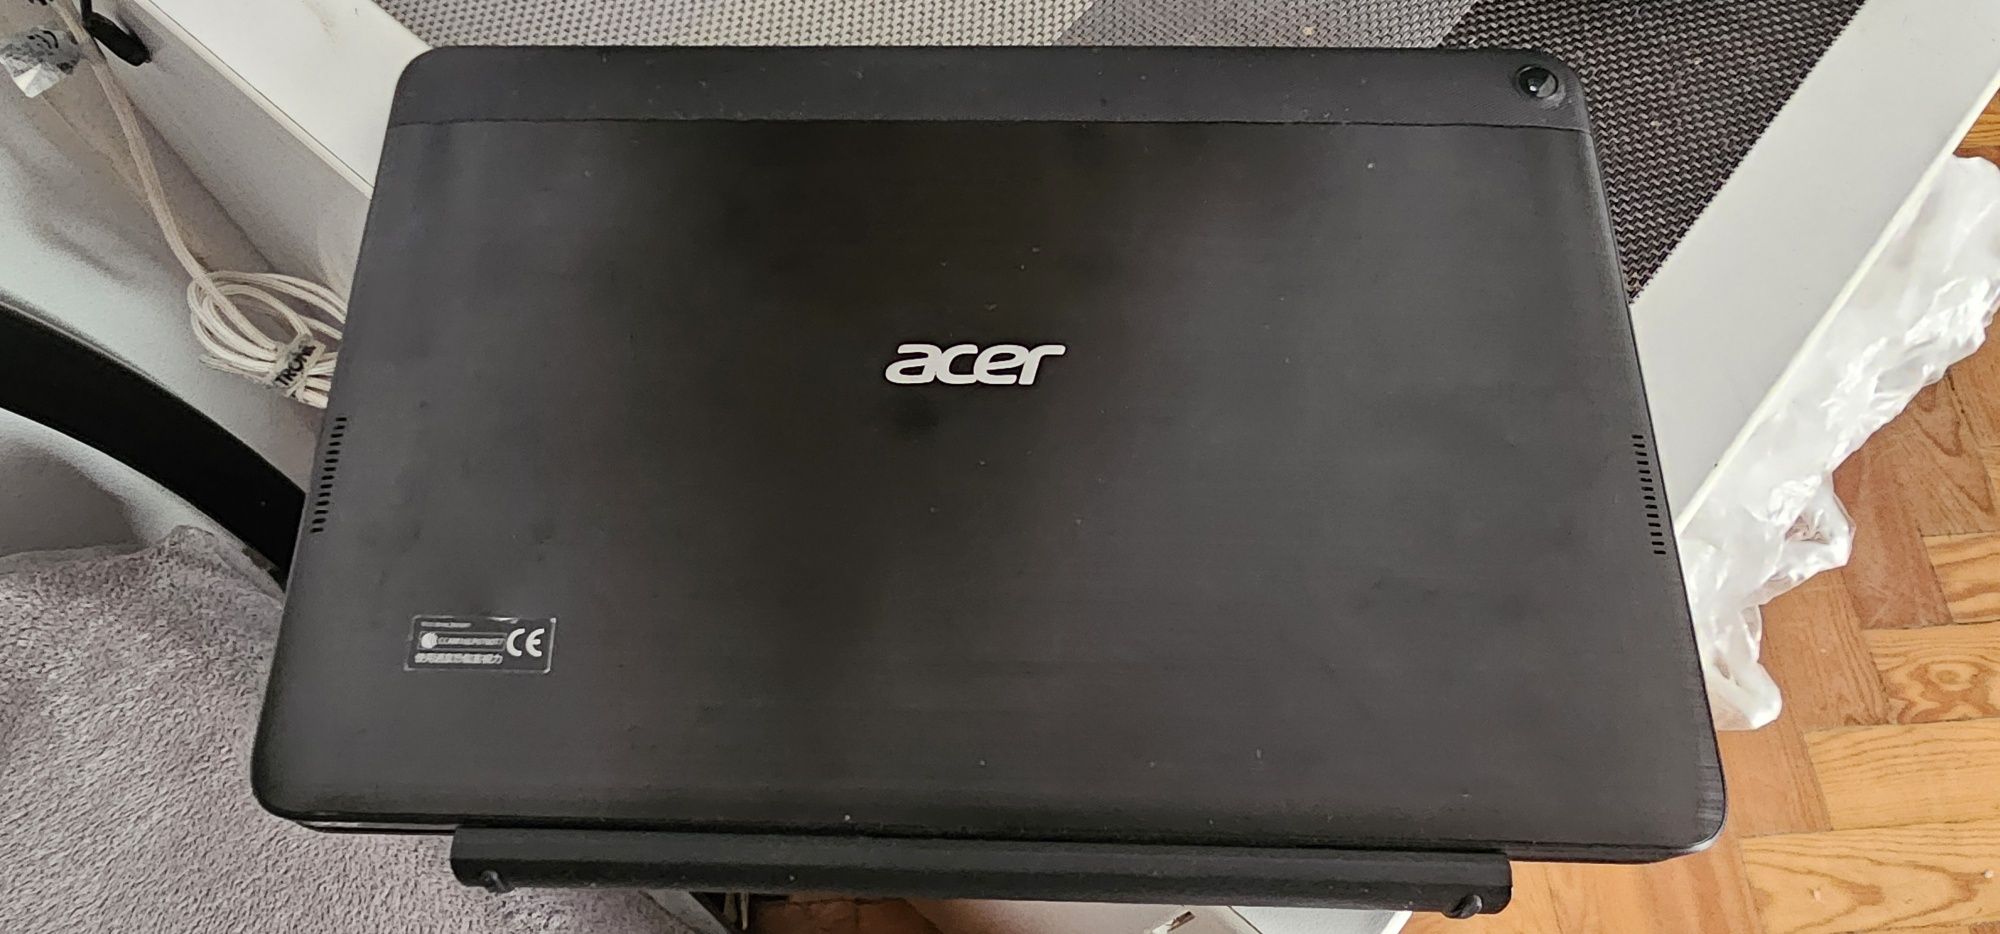 Vendo Acer Aspire One